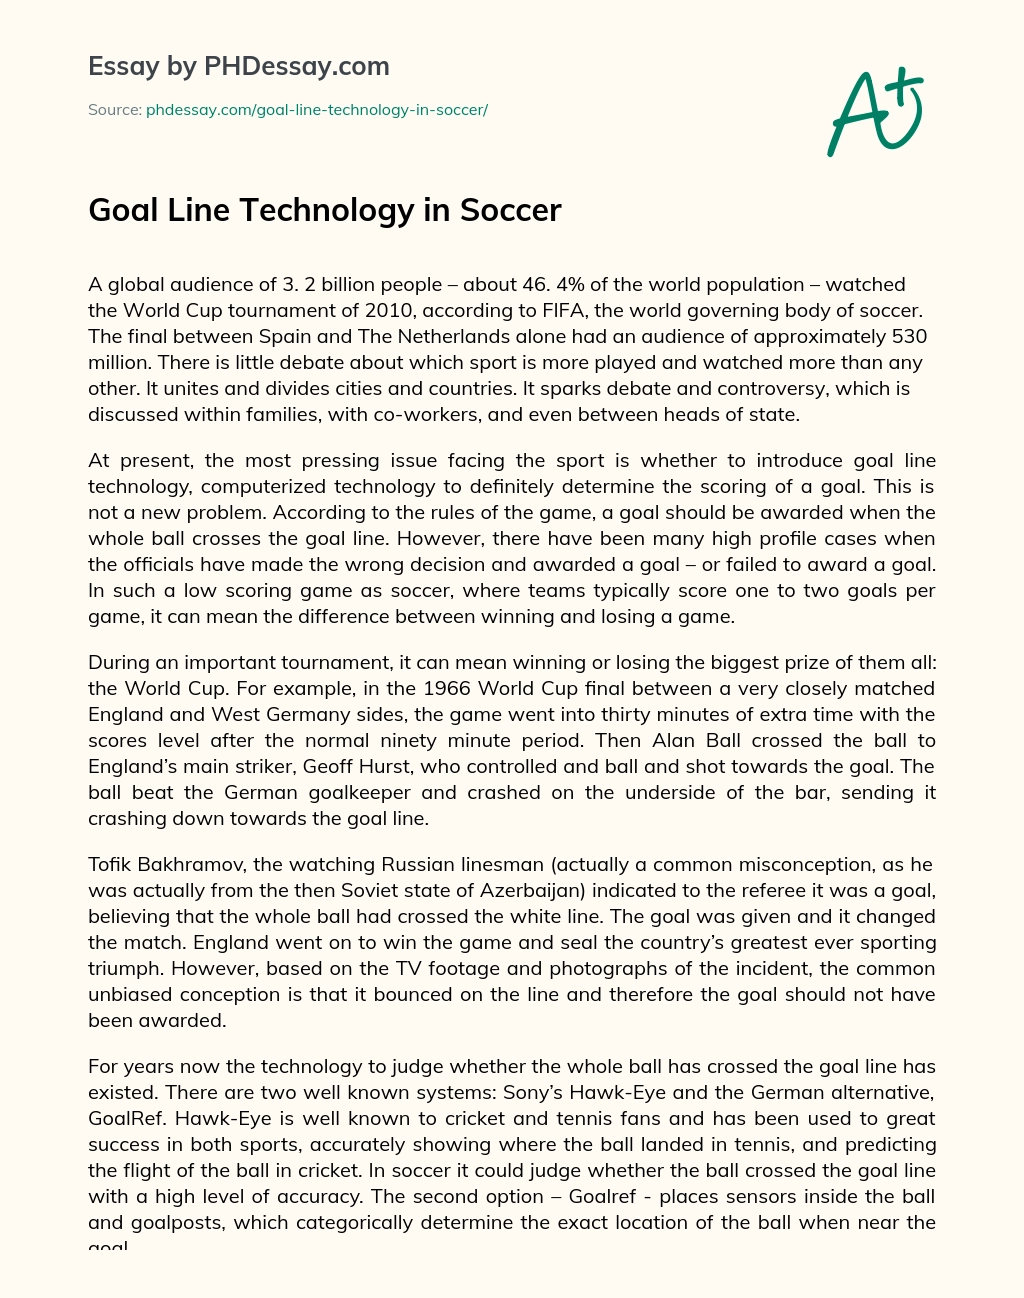 Goal Line Technology in Soccer essay